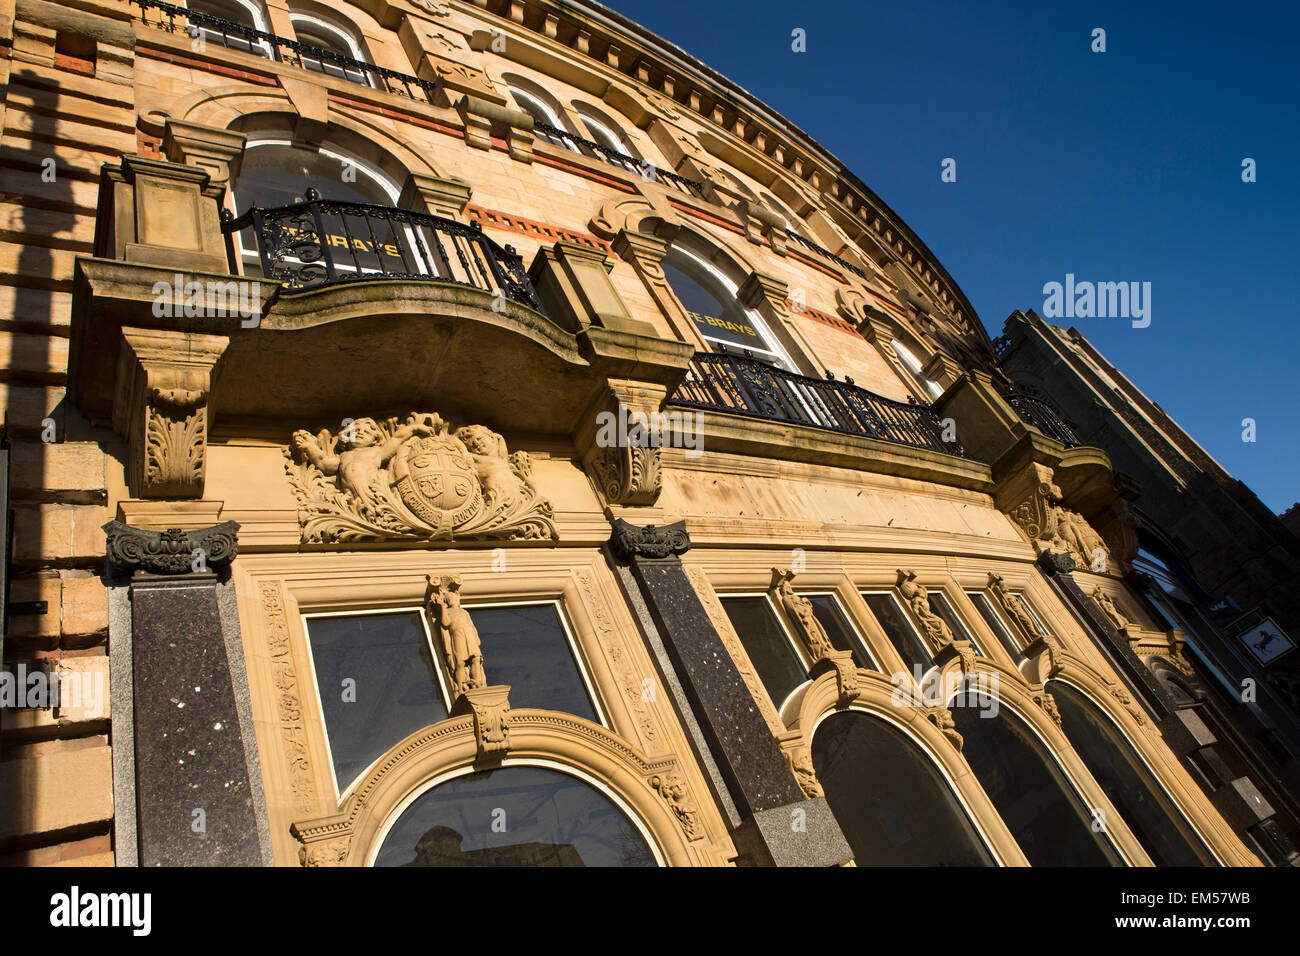 UK, England, Yorkshire, Harrogate, elegant honey-coloured stone architecture of curved building Stock Photo